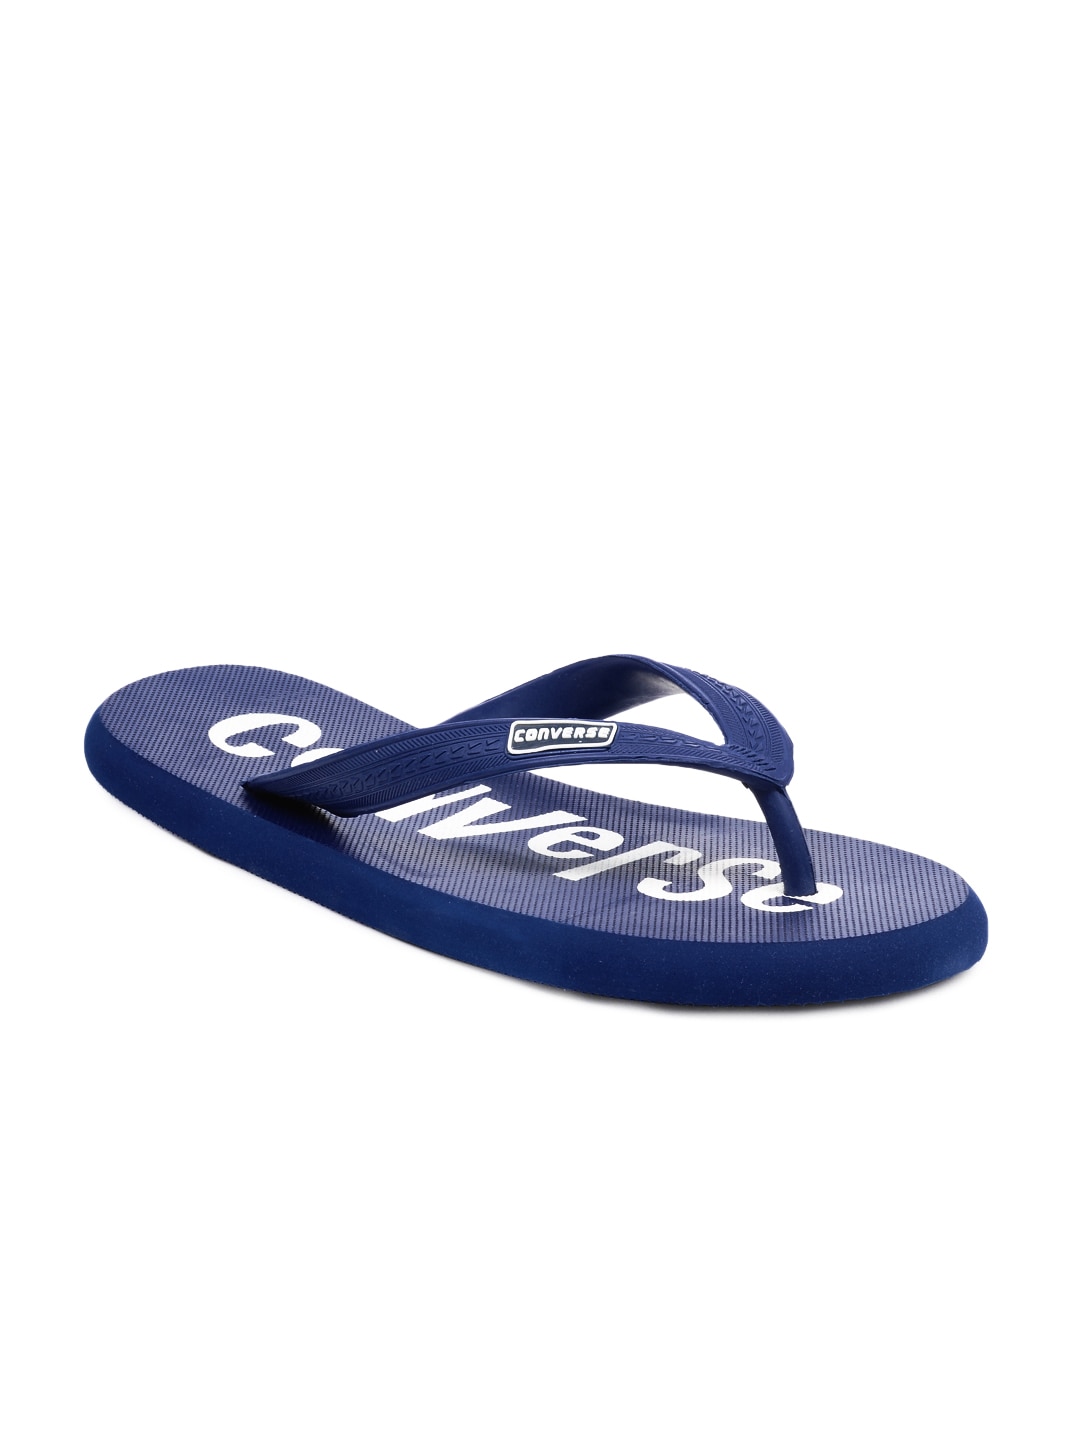 Converse Unisex Blue Flip Flops